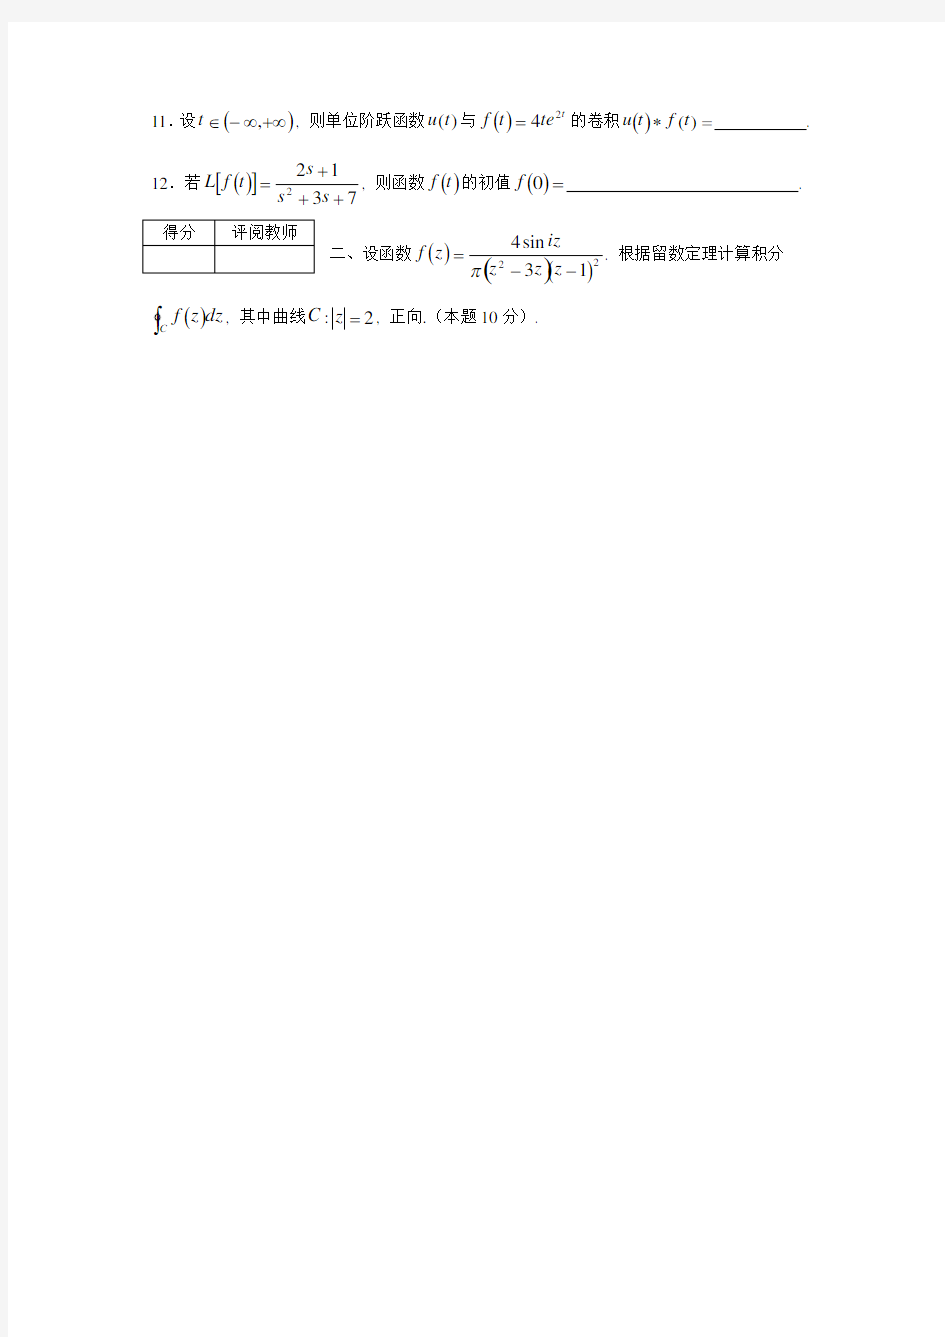 四川理工学院复变函数与积分变换试卷(12-13-1-A2)